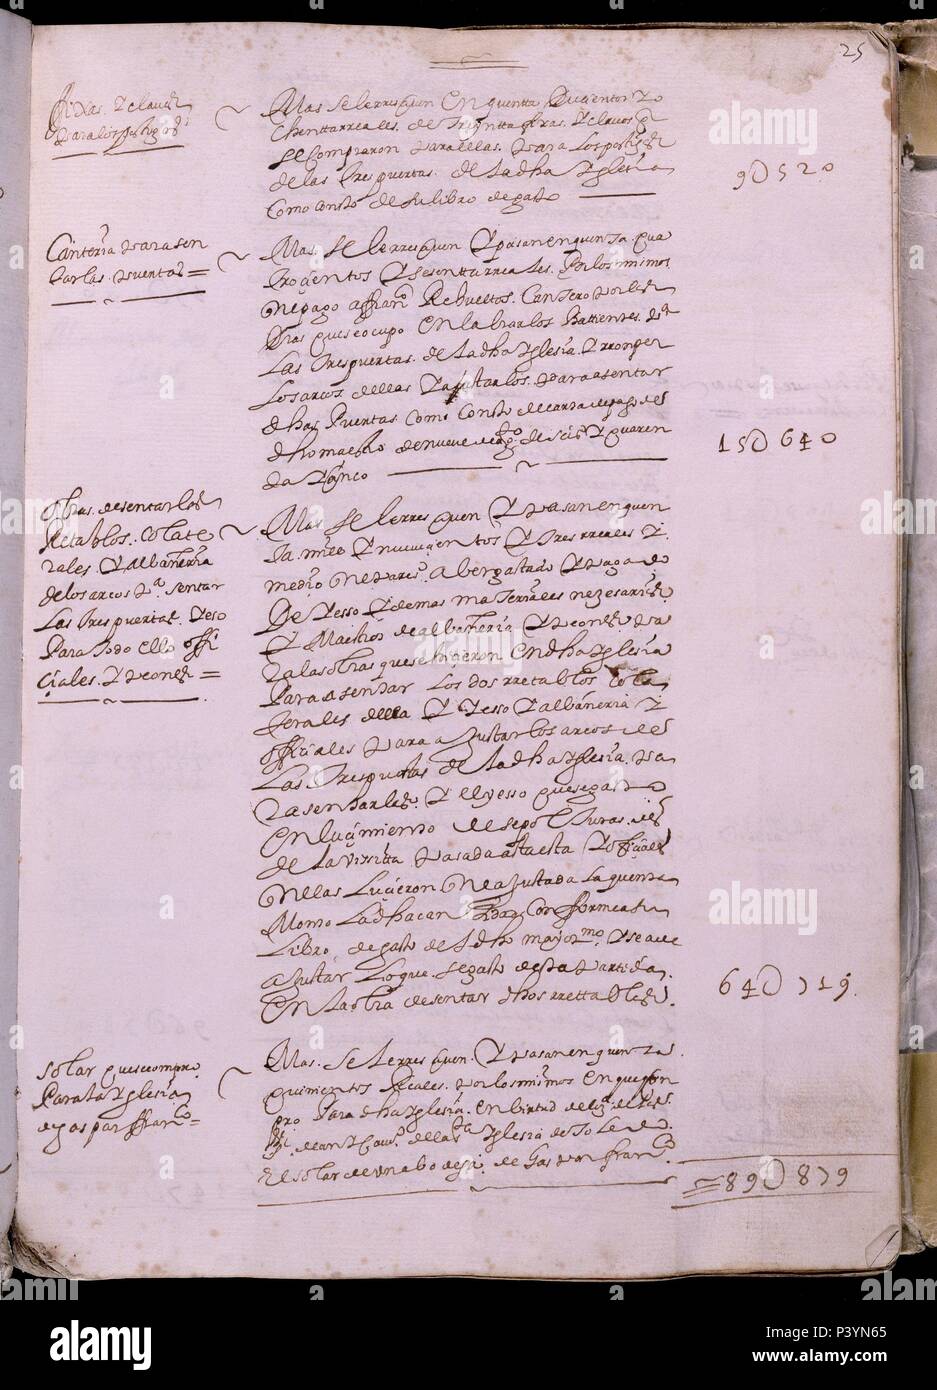 LIBRO DE FABRICA - CUENTAS DE LA CATEDRAL DE GETAFE - Nº4 - FOLIO 25 R - AÑOS 1644 A 1692. Location: ARCHIVO HISTORICO DIOCESANO, GETAFE, MADRID, SPAIN. Stock Photo